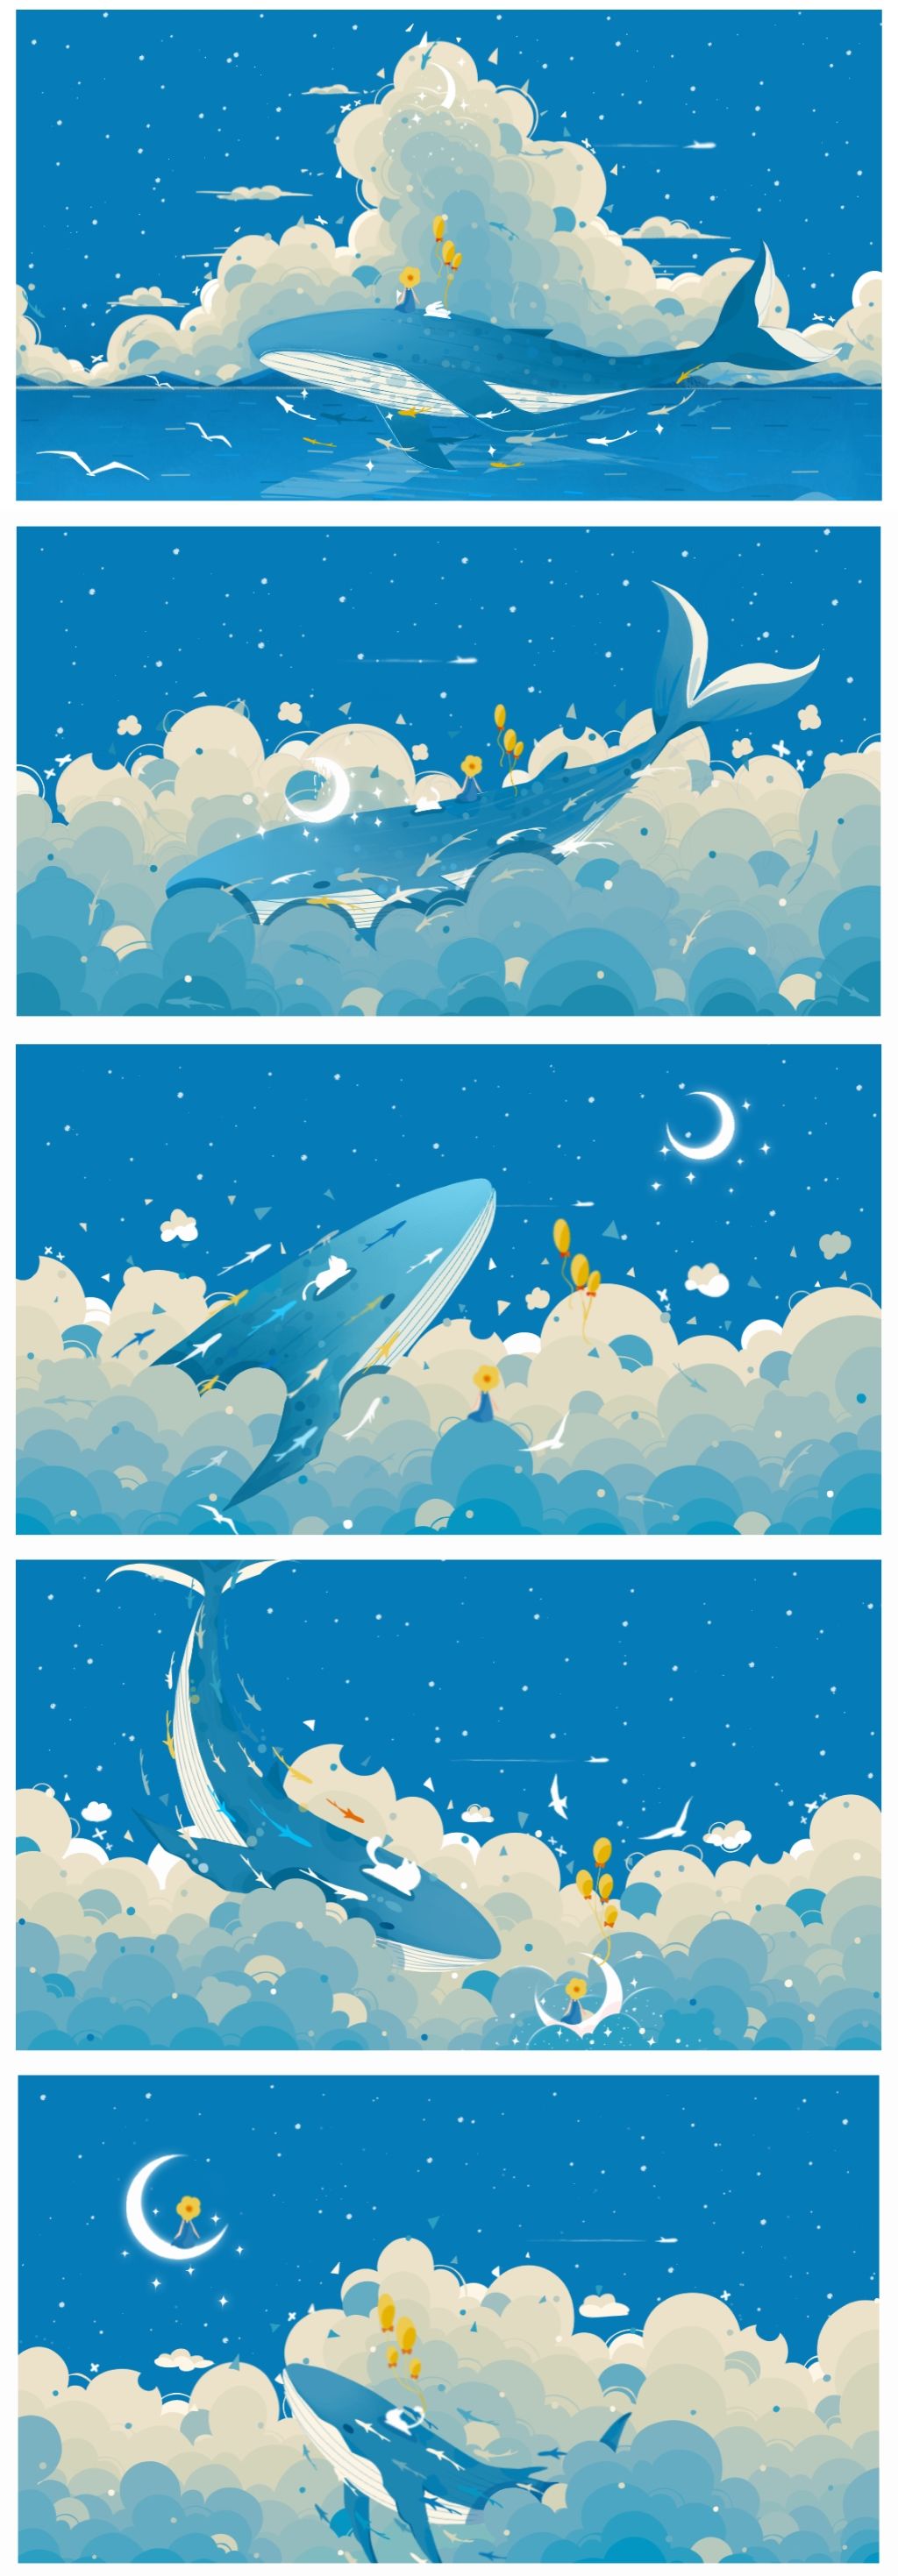 一张关于鲸鱼合集的长图插画图片壁纸